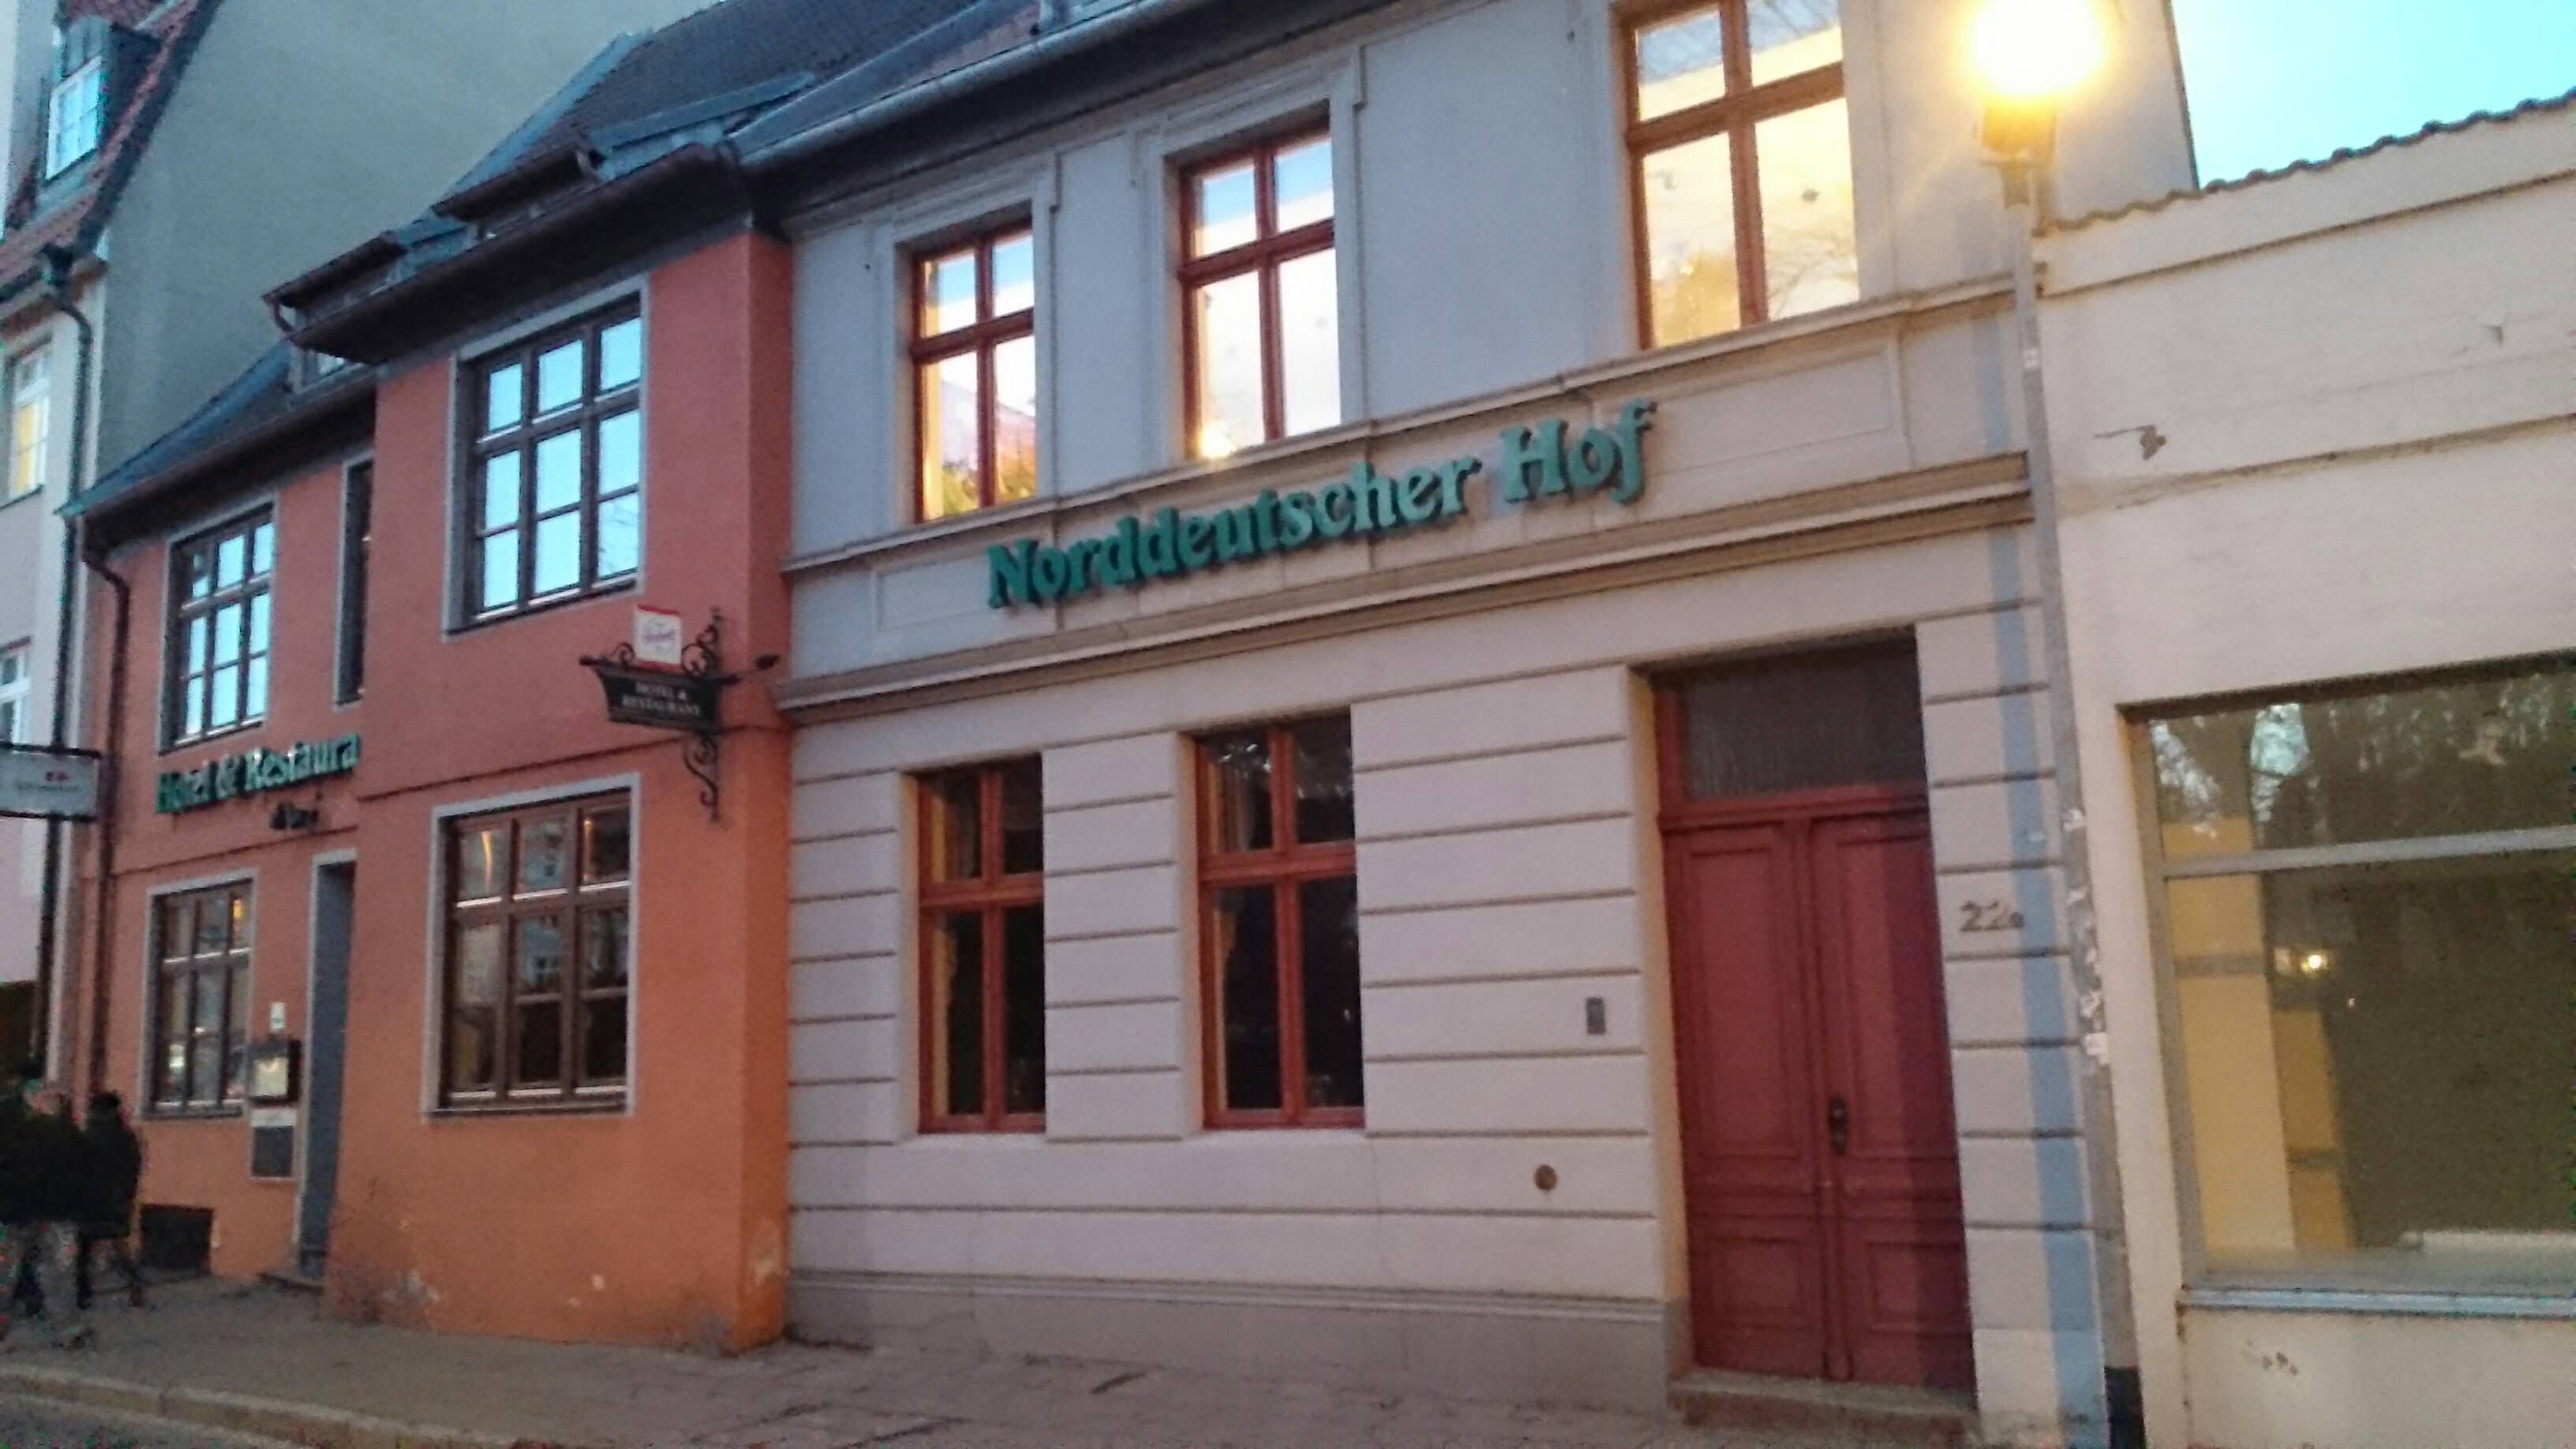 Bild 1 Norddeutscher Hof in Stralsund